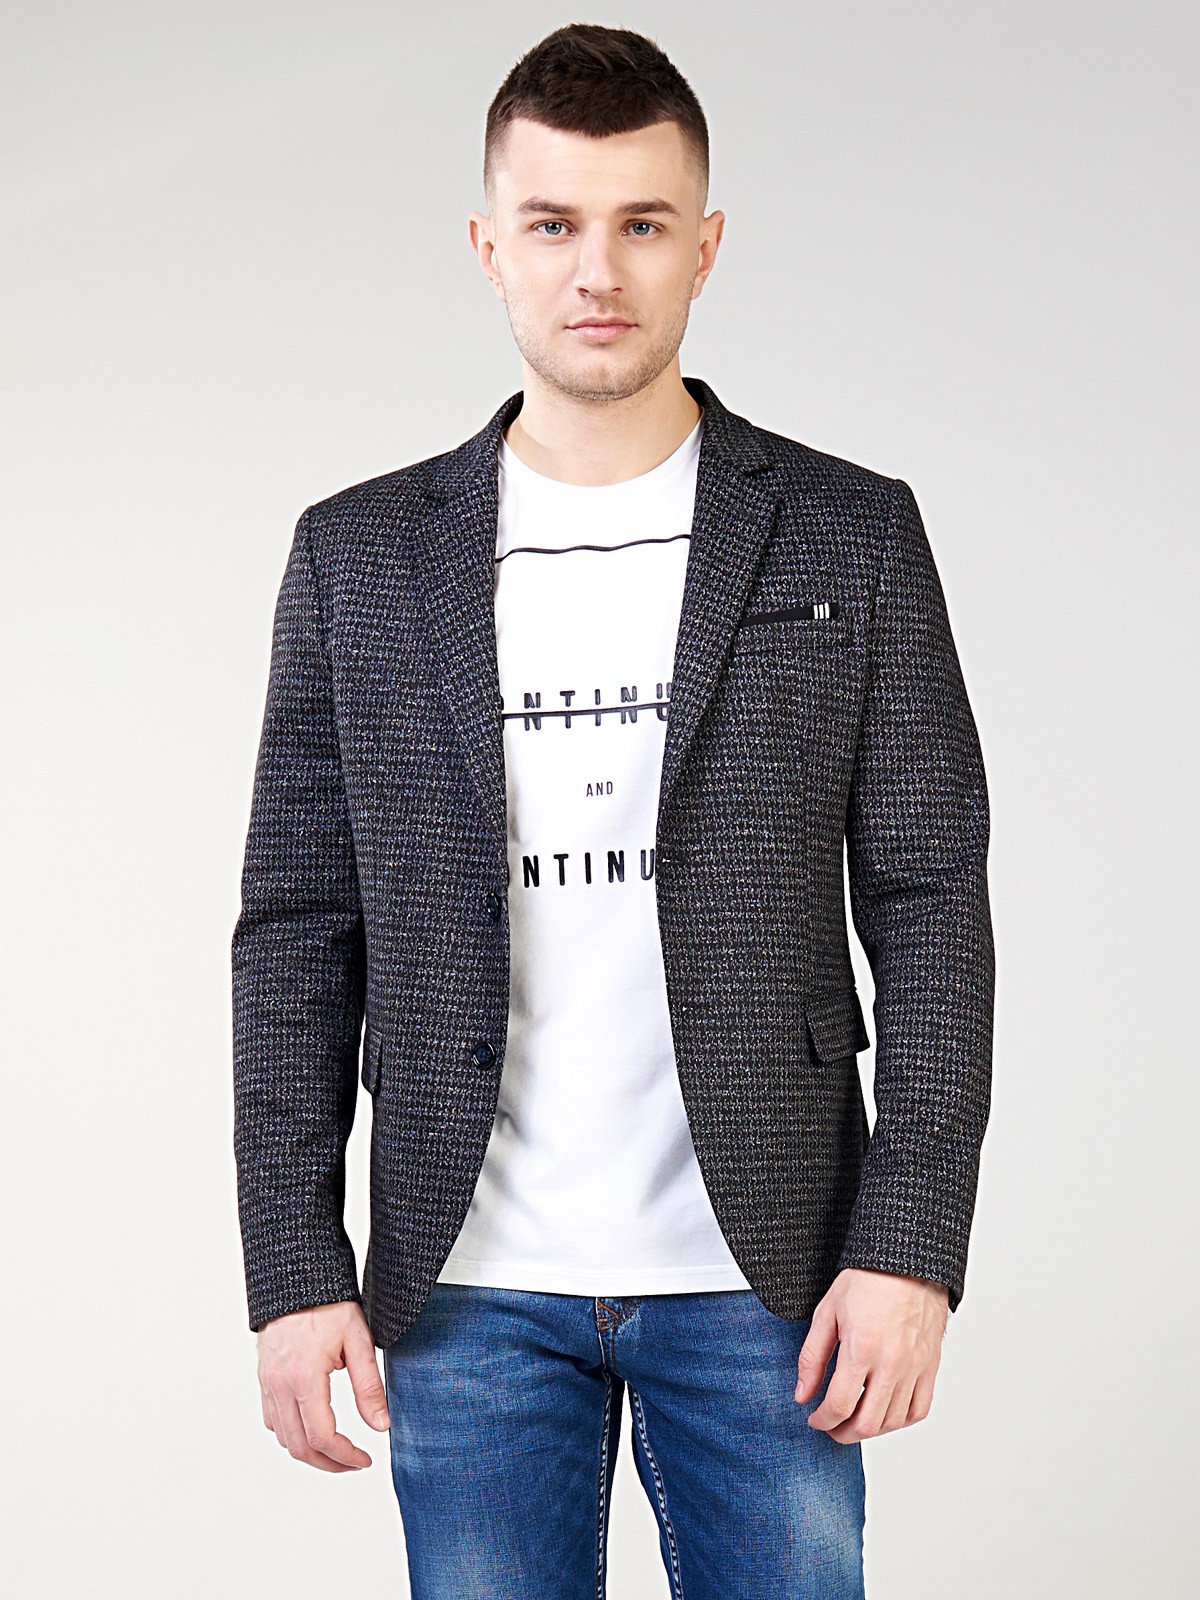 Серый трикотажный мужской пиджак | Купить в интернет-магазине Merada